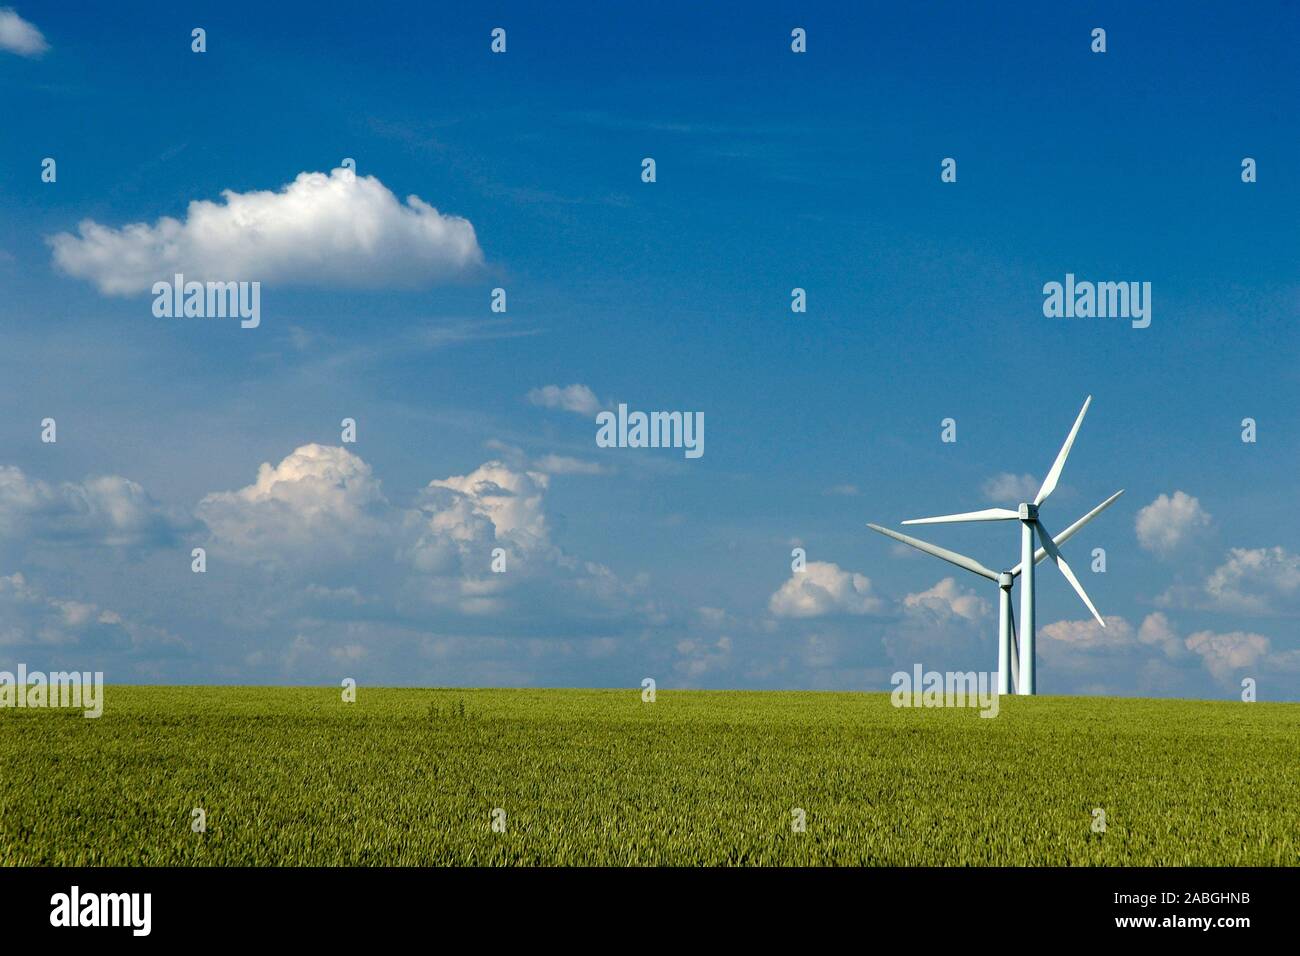 Windkraft, Windrad in Monokultur, Querformat Stock Photo